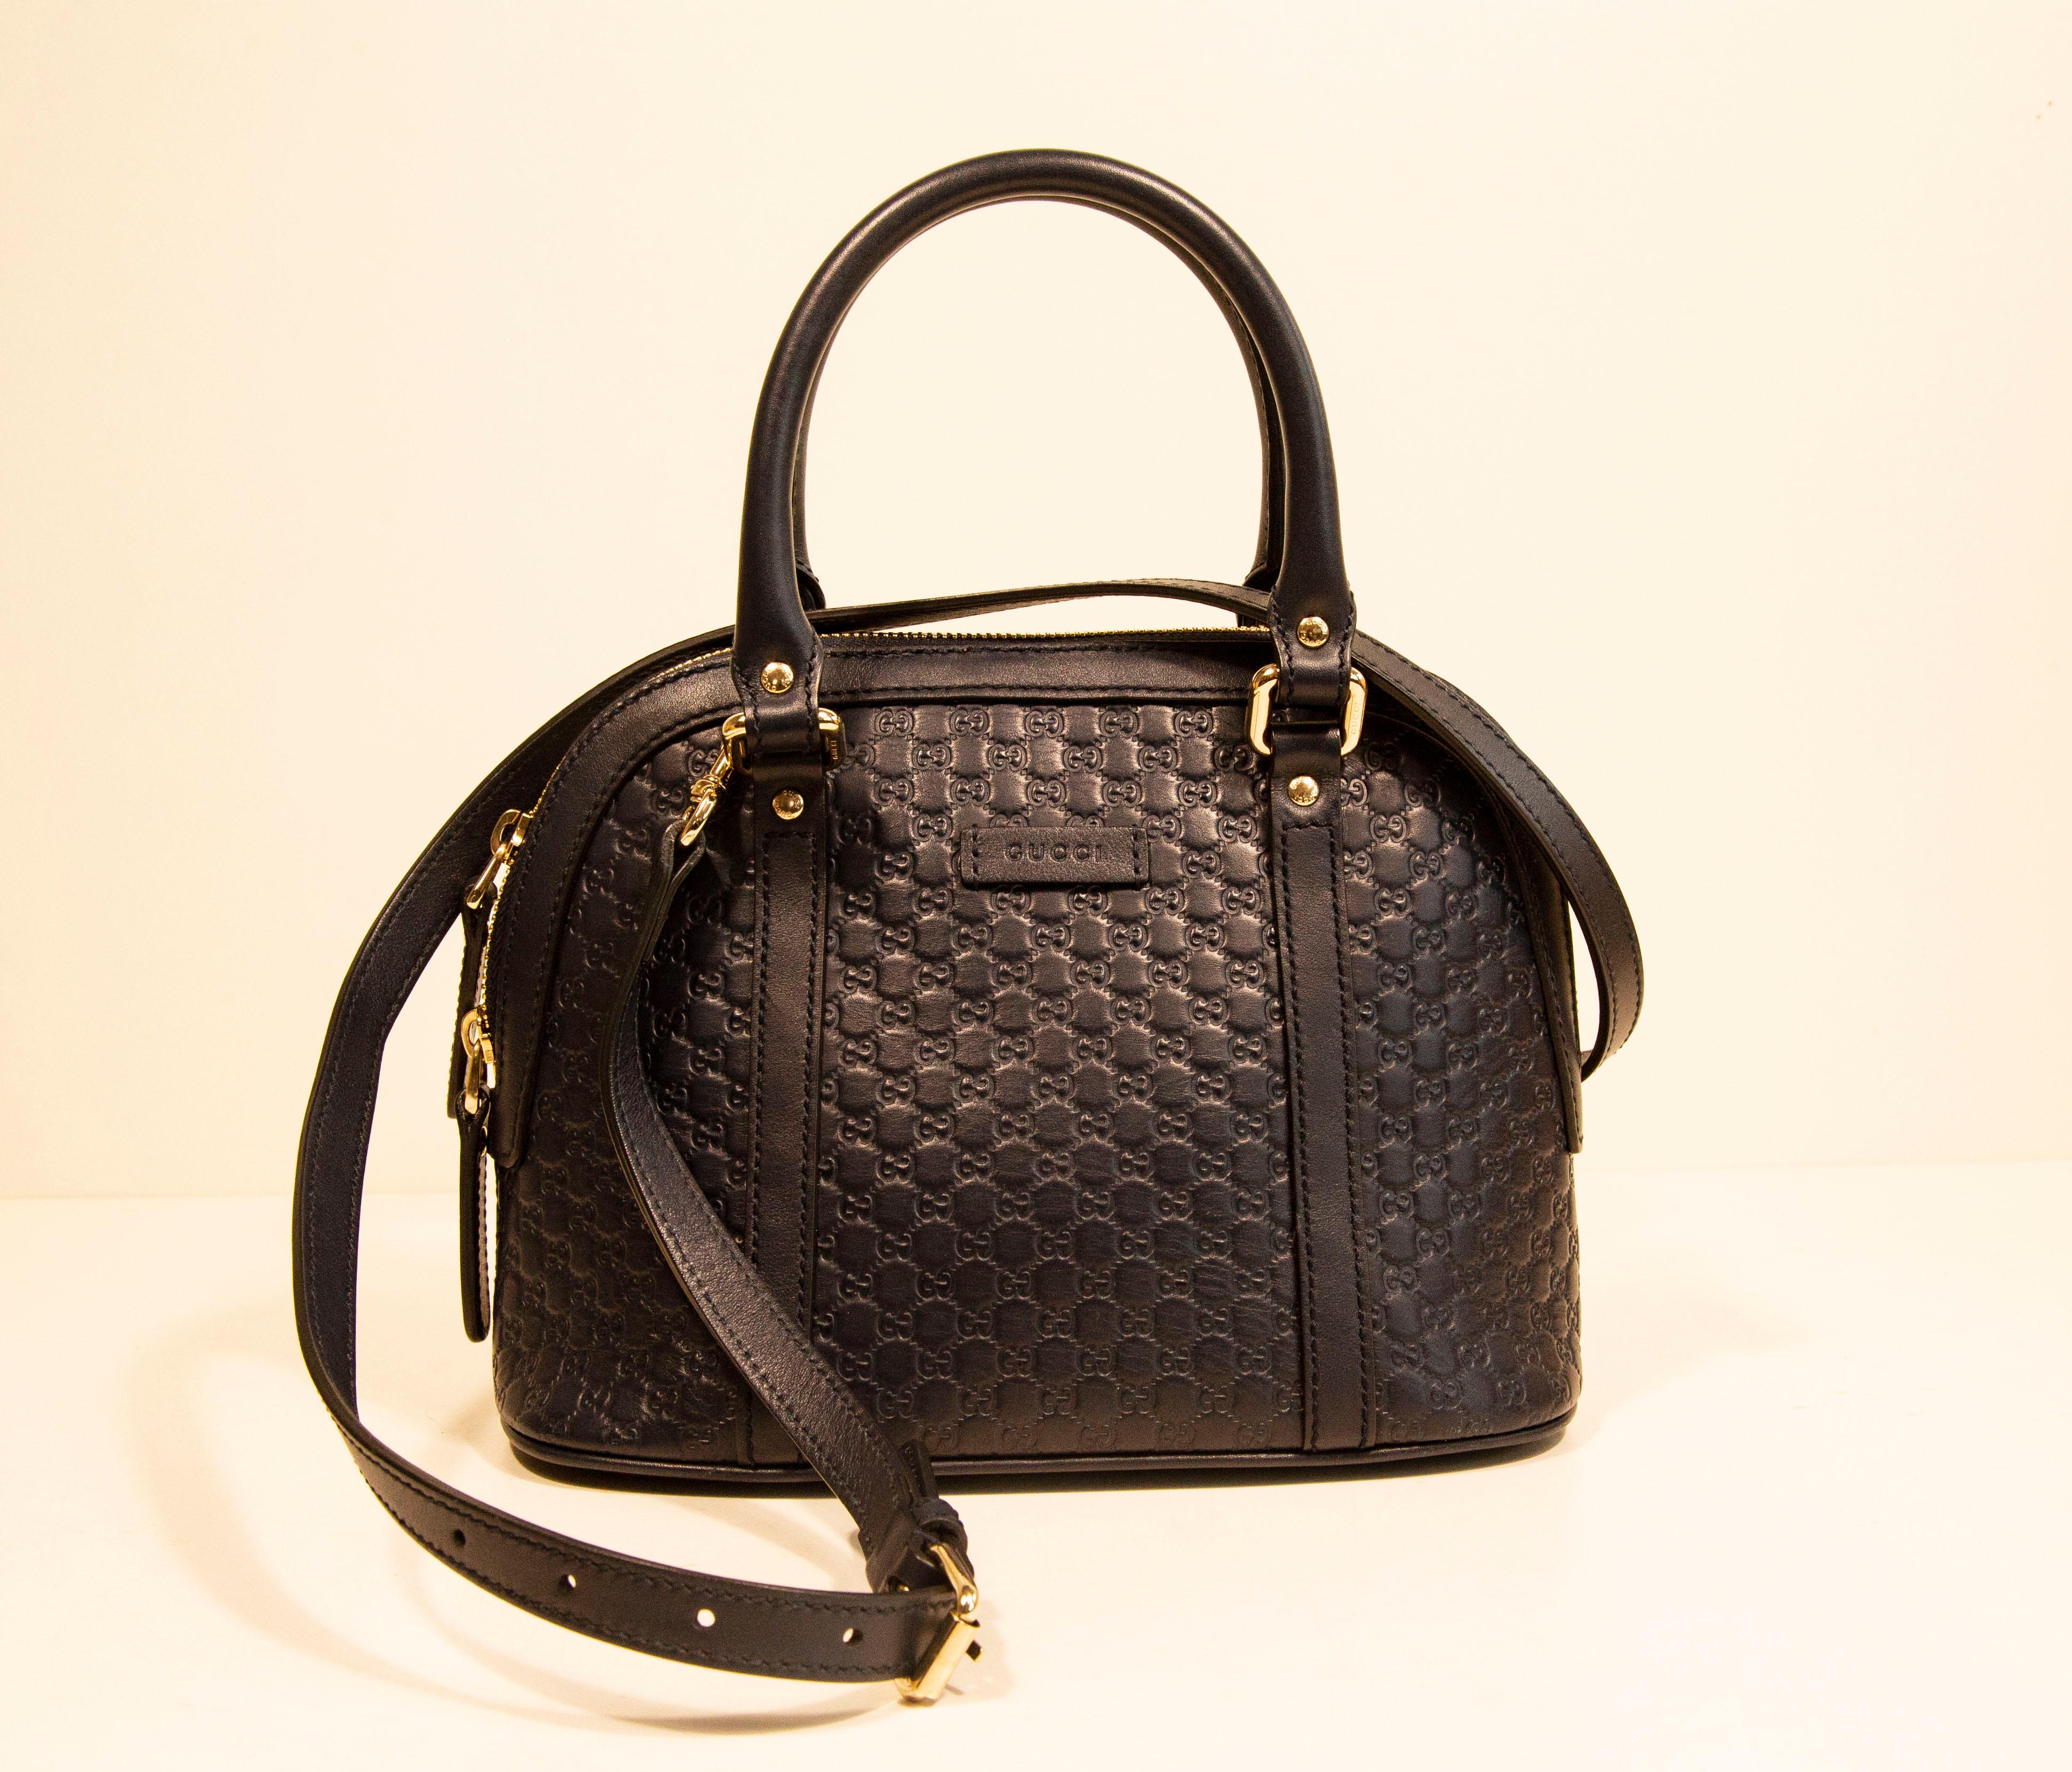 Eine Gucci Dome Crossbody Bag /Top Handle Bag aus mini GG Guccissima geprägtem navyblauem Leder. Die Tasche ist mit leicht goldfarbenen Beschlägen versehen. Der Innenraum ist mit grauem Segeltuch ausgekleidet und verfügt neben dem Hauptfach über ein